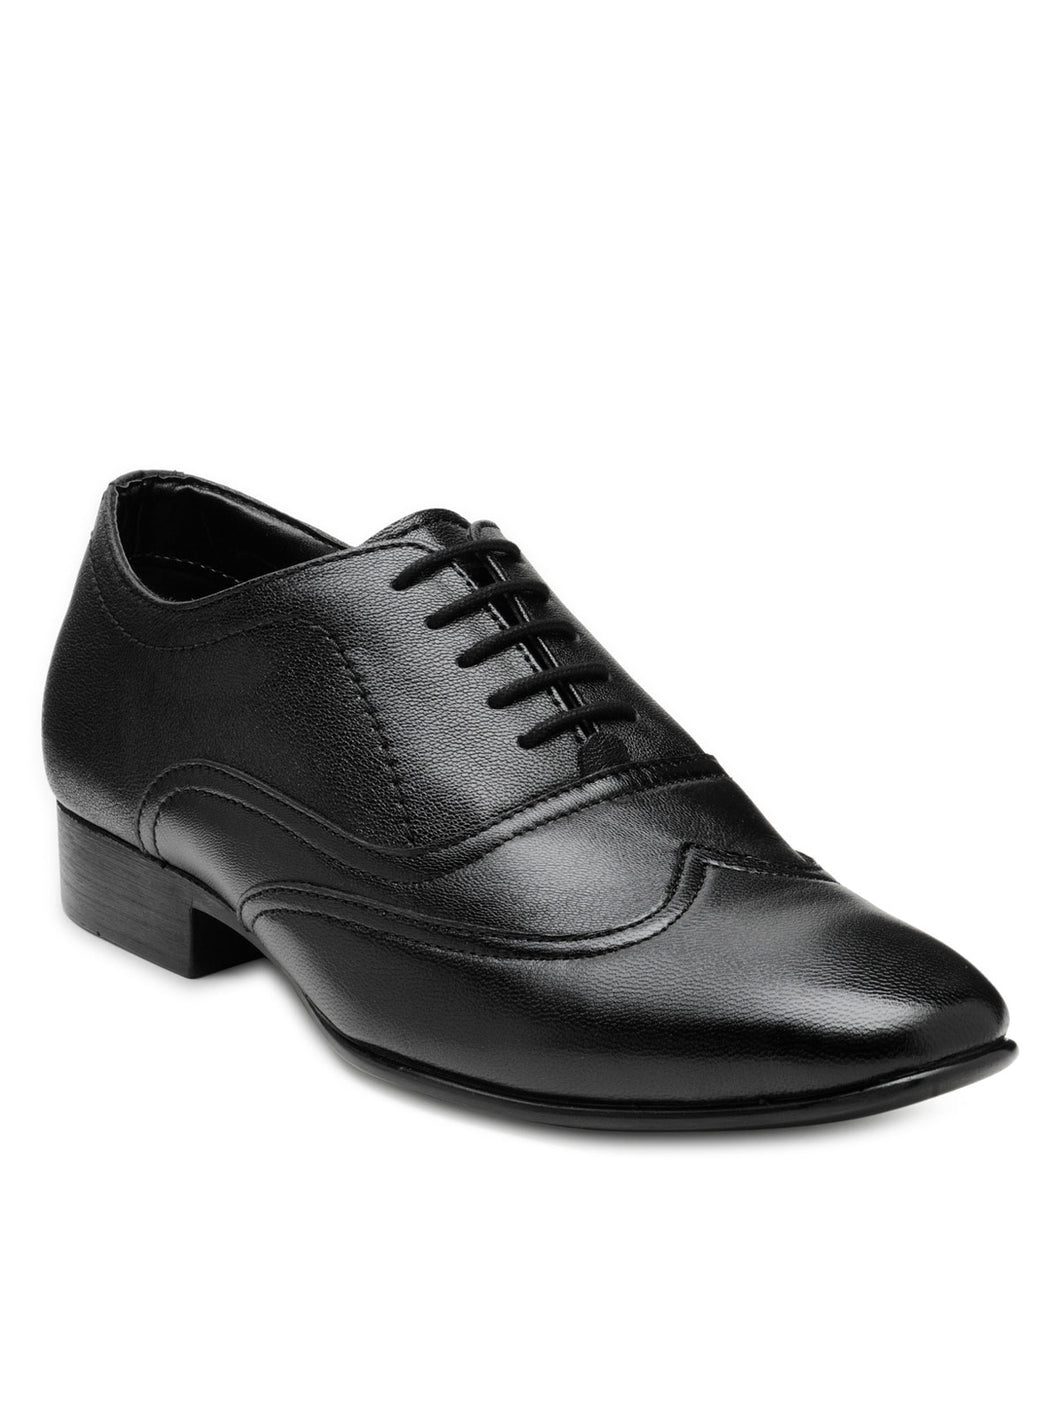 Teakwood Leather Men's Black Derby Shoes